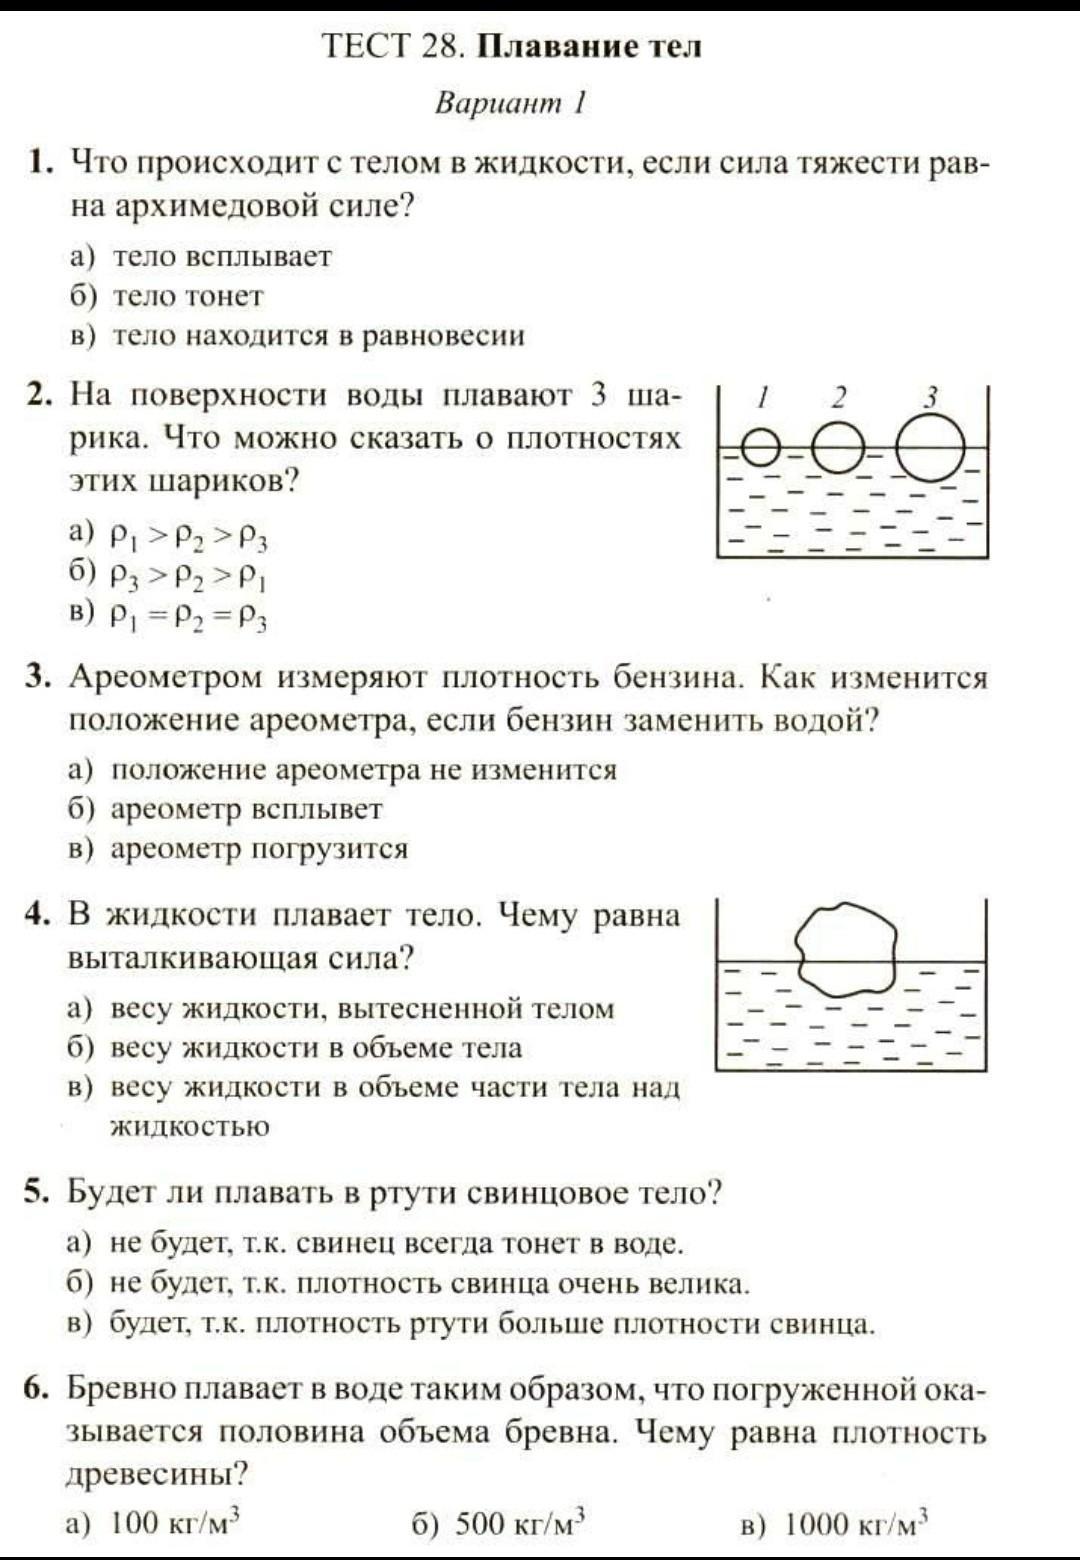 Архимедова сила 7 класс тест 1 вариант. Тест 28 плавание тел вариант 1. Тест 28 плавание тел вариант 1 ответы. Физика 7 класс тест 28 плавание тел ответы. Физика. 7 Класс. Тесты.